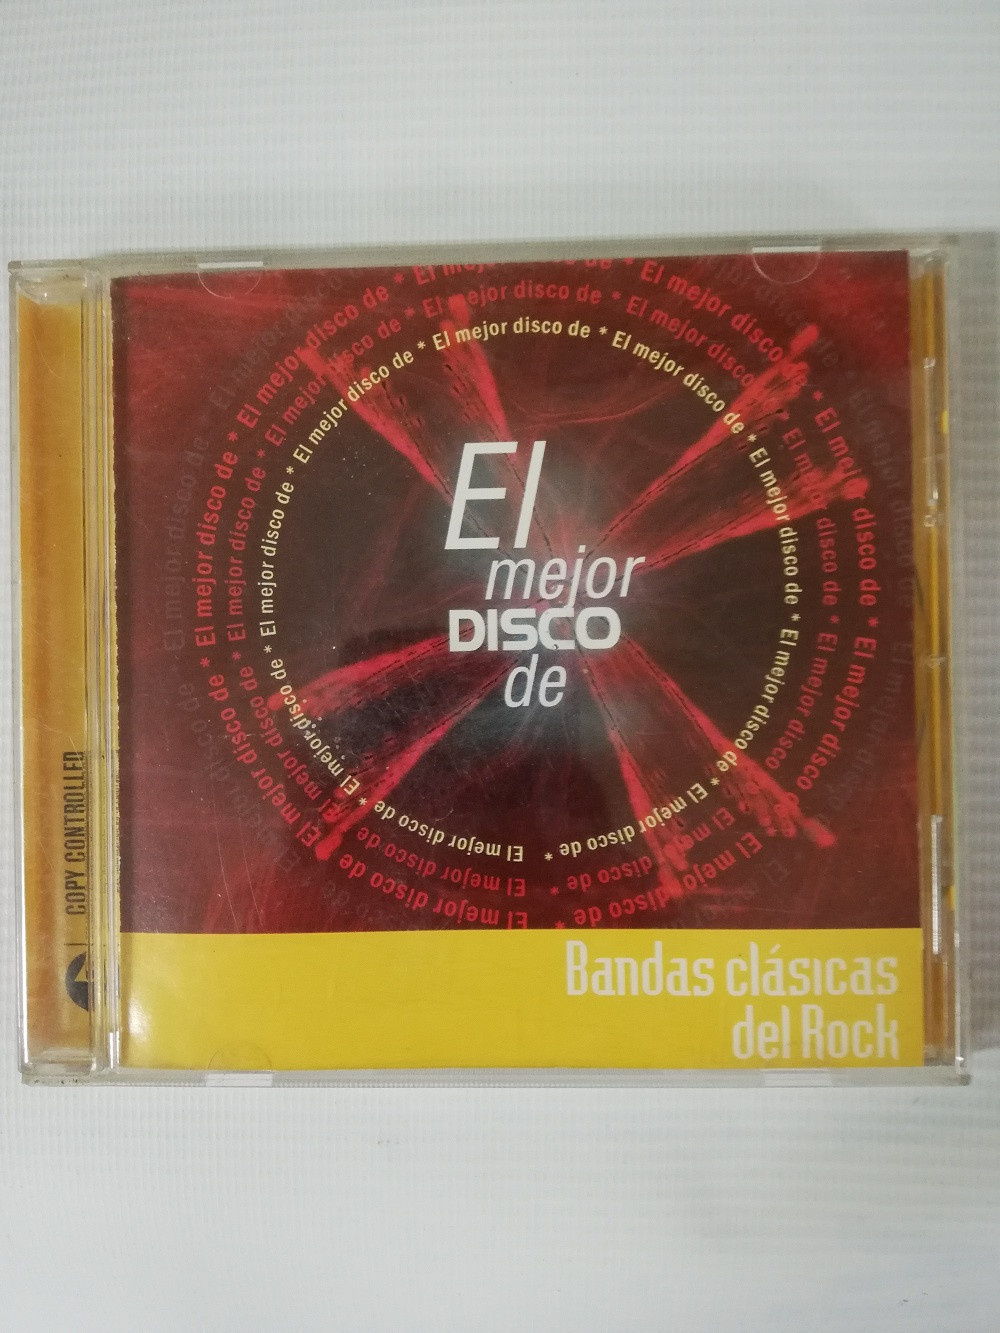 Imagen CD EL MEJOR DISCO DE BANDAS CLÁSICAS DEL ROCK - VARIOS INTÉRPRETES